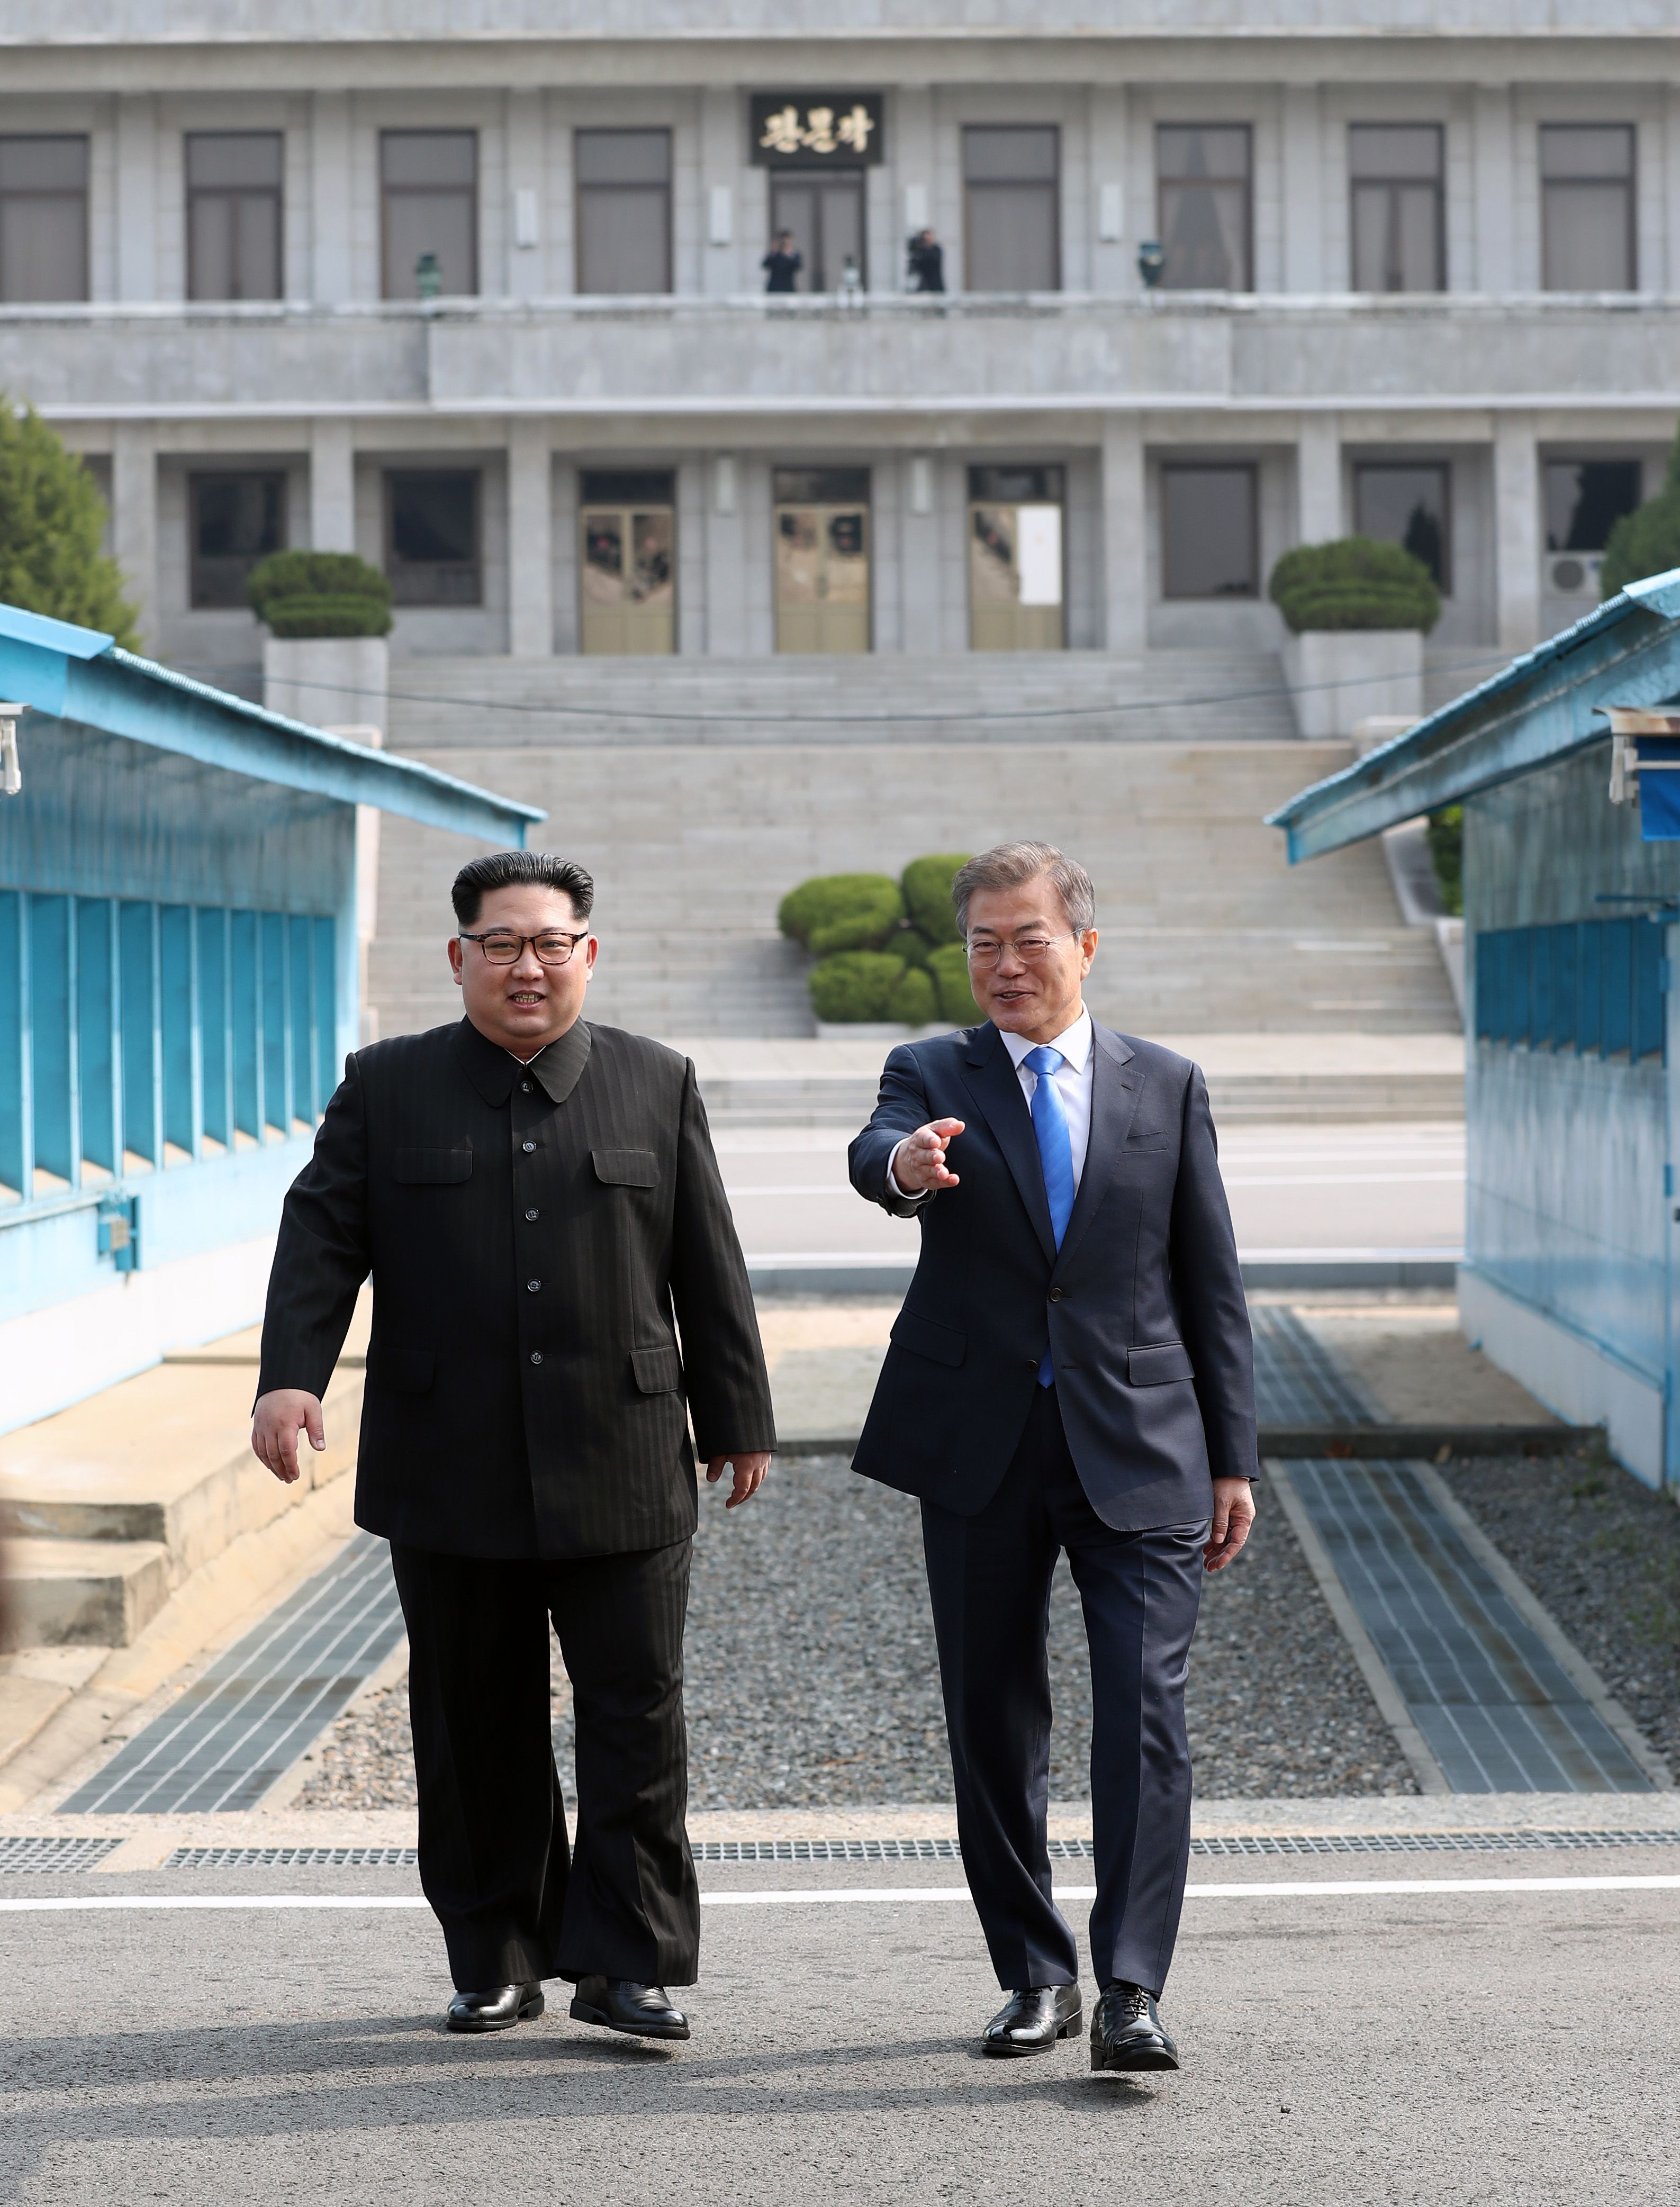 رئيس كوريا الشمالية بجوار الزعيم الكورى الشمالى